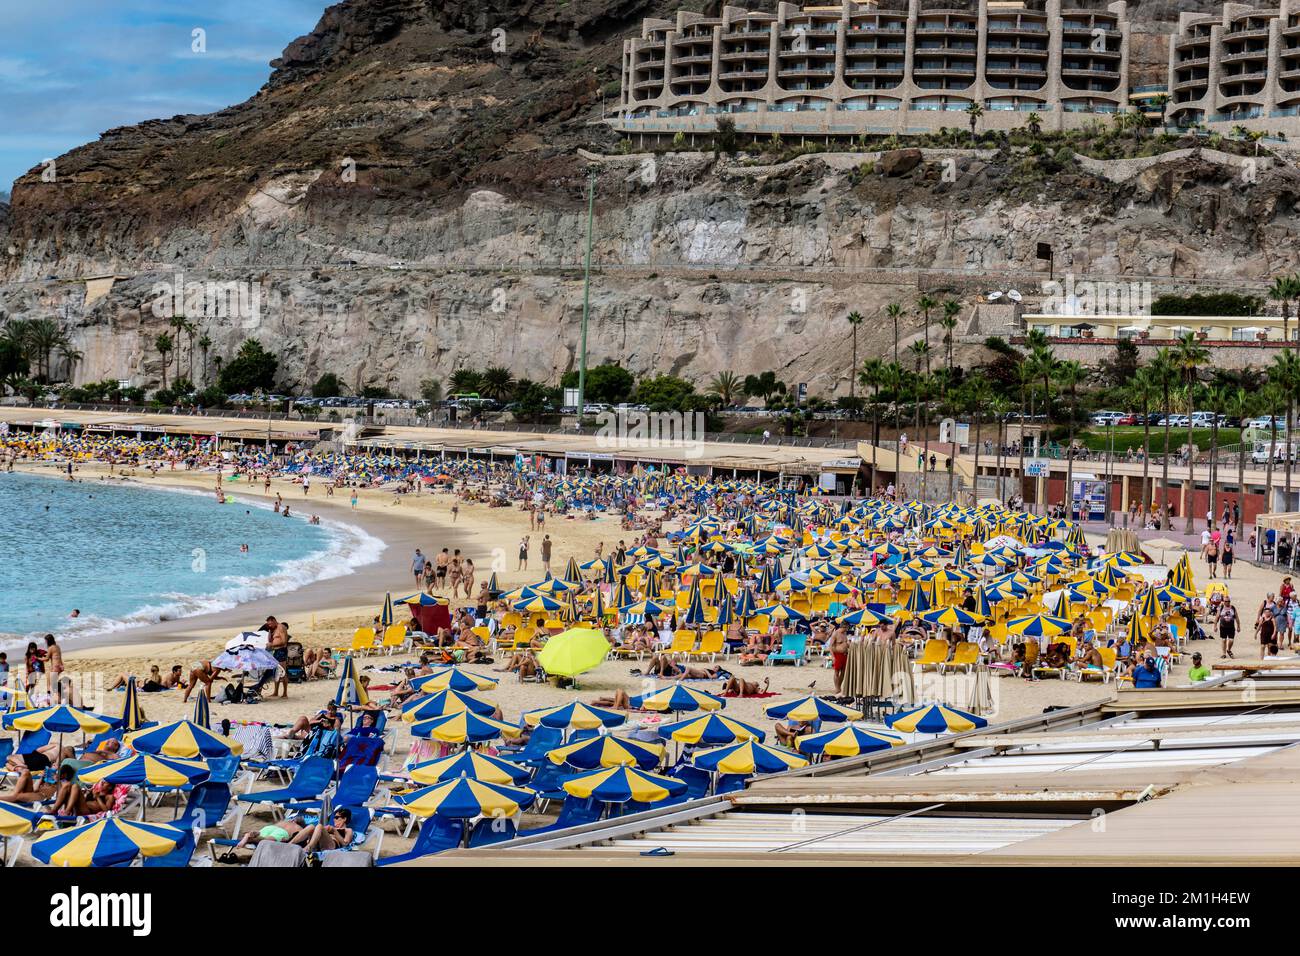 La plage dynamique et le paysage magnifique de Playa de Amadores à Gran Canaria prennent vie avec une explosion de couleurs. Banque D'Images